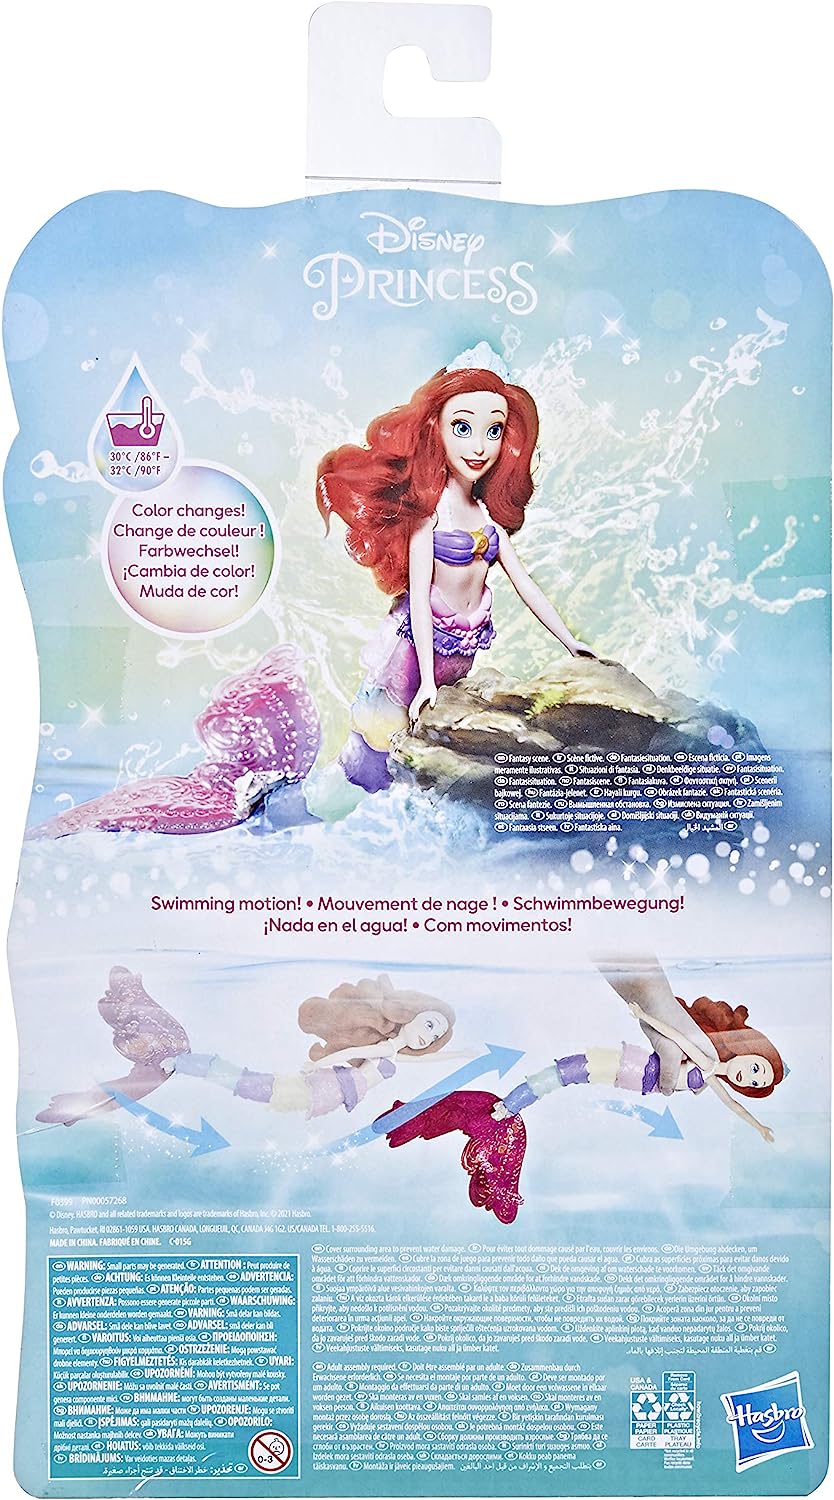 無料ラッピングでプレゼントや贈り物にも 逆輸入並行輸入送料込 リトル マーメイド アリエル ディズニープリンセス 人魚姫 送料無料 Disney Princess Rainbow Reveal Ariel Color Change Doll Water Toy Inspired By The Disney S The Little